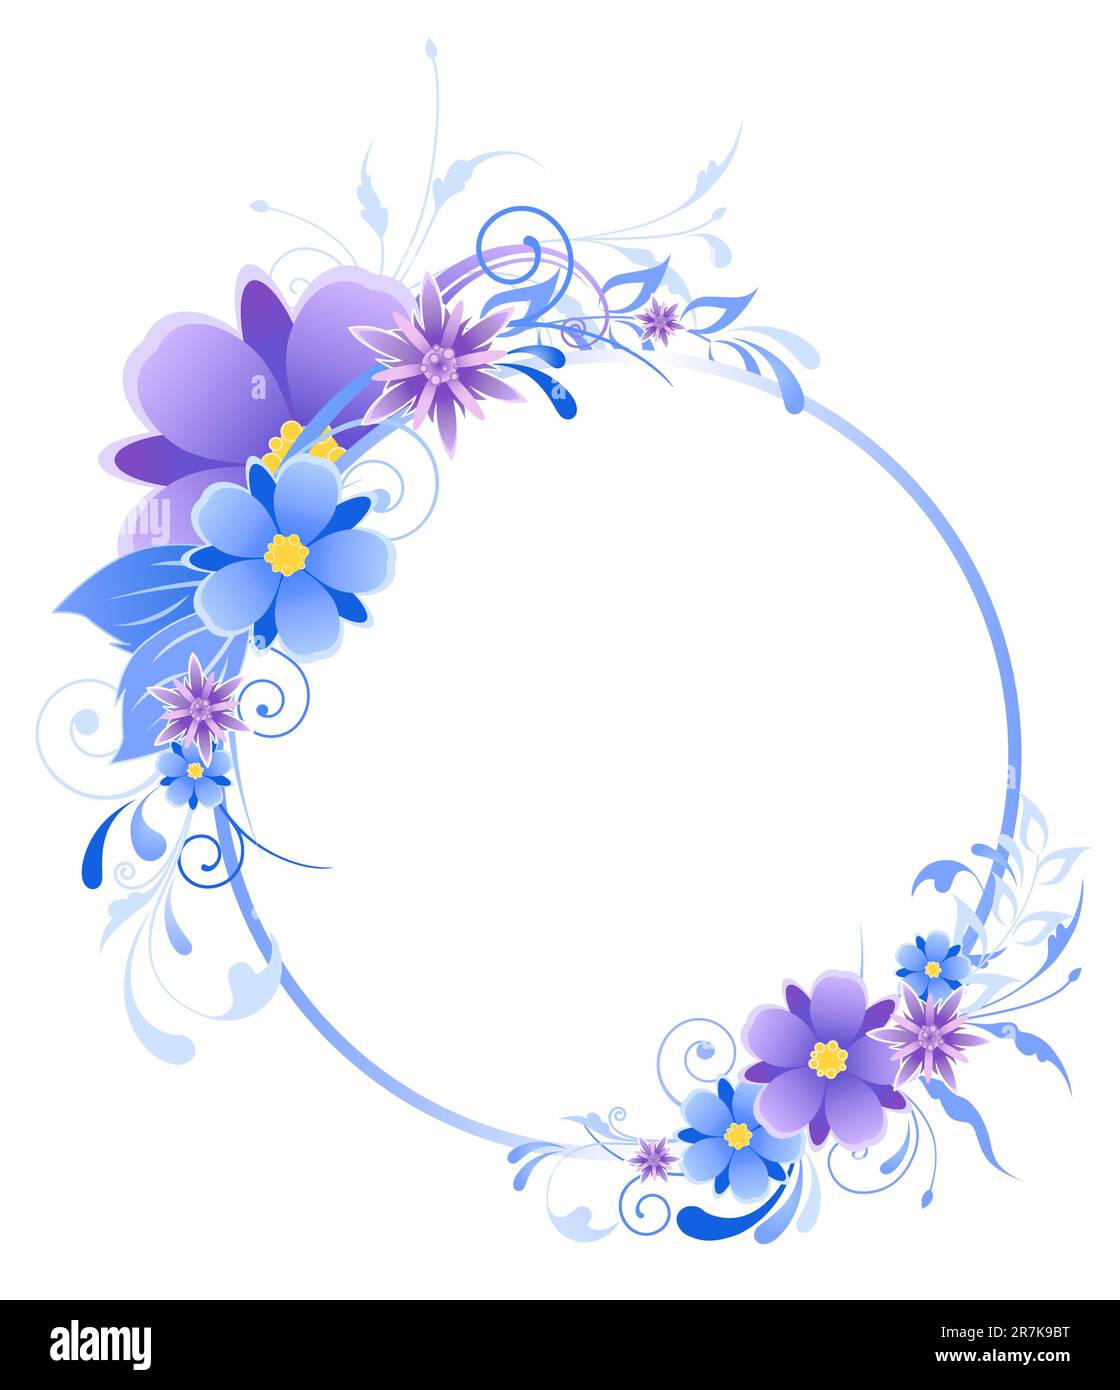 Banner redondo azul con flores, hojas y adornos Ilustración del Vector